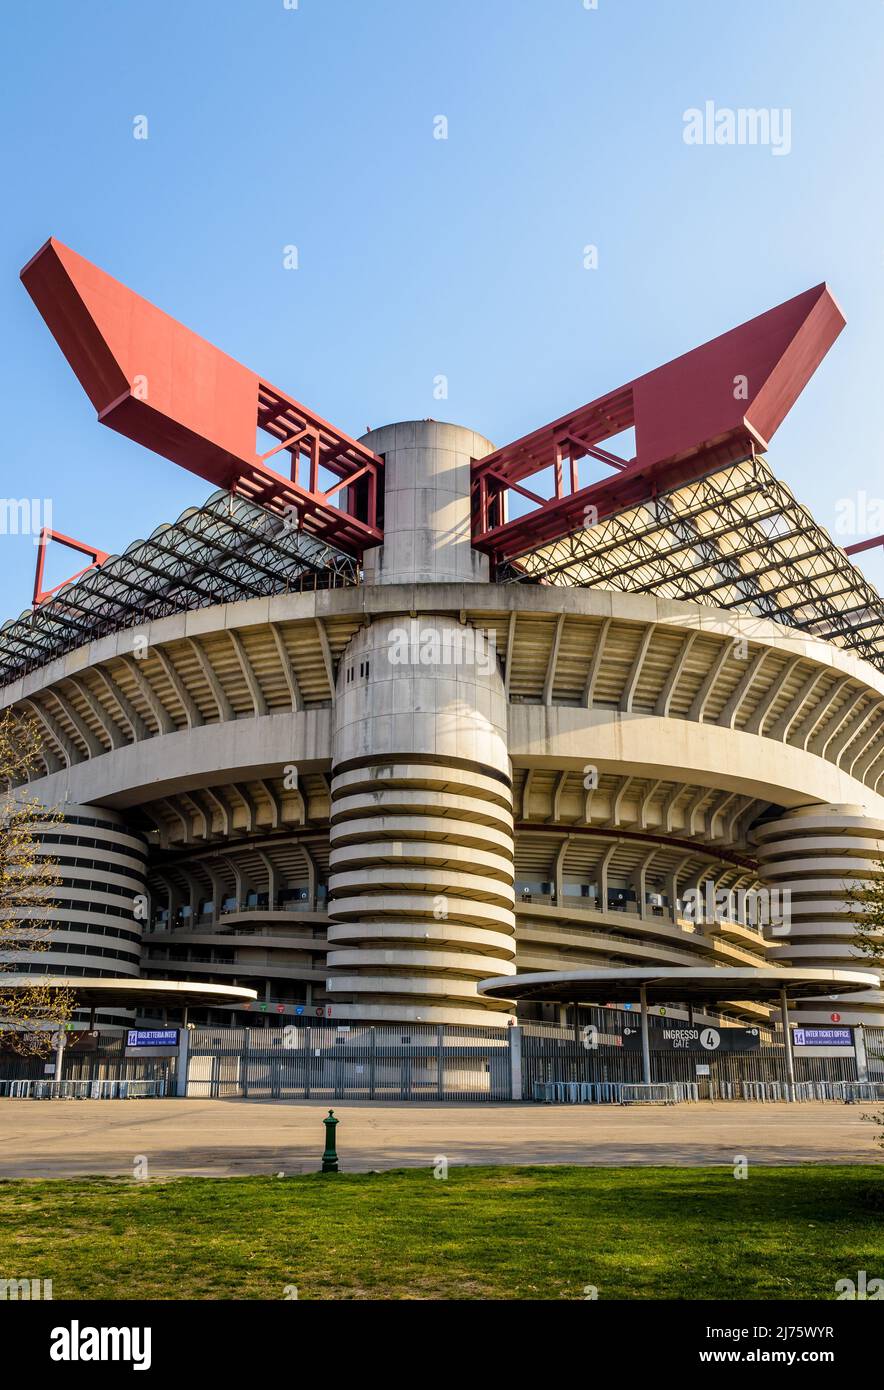 Vista en ángulo bajo de la estructura del estadio de fútbol de San Siro, estadio de los clubes de fútbol Inter de Milán y AC Milán en Milán, Italia. Foto de stock